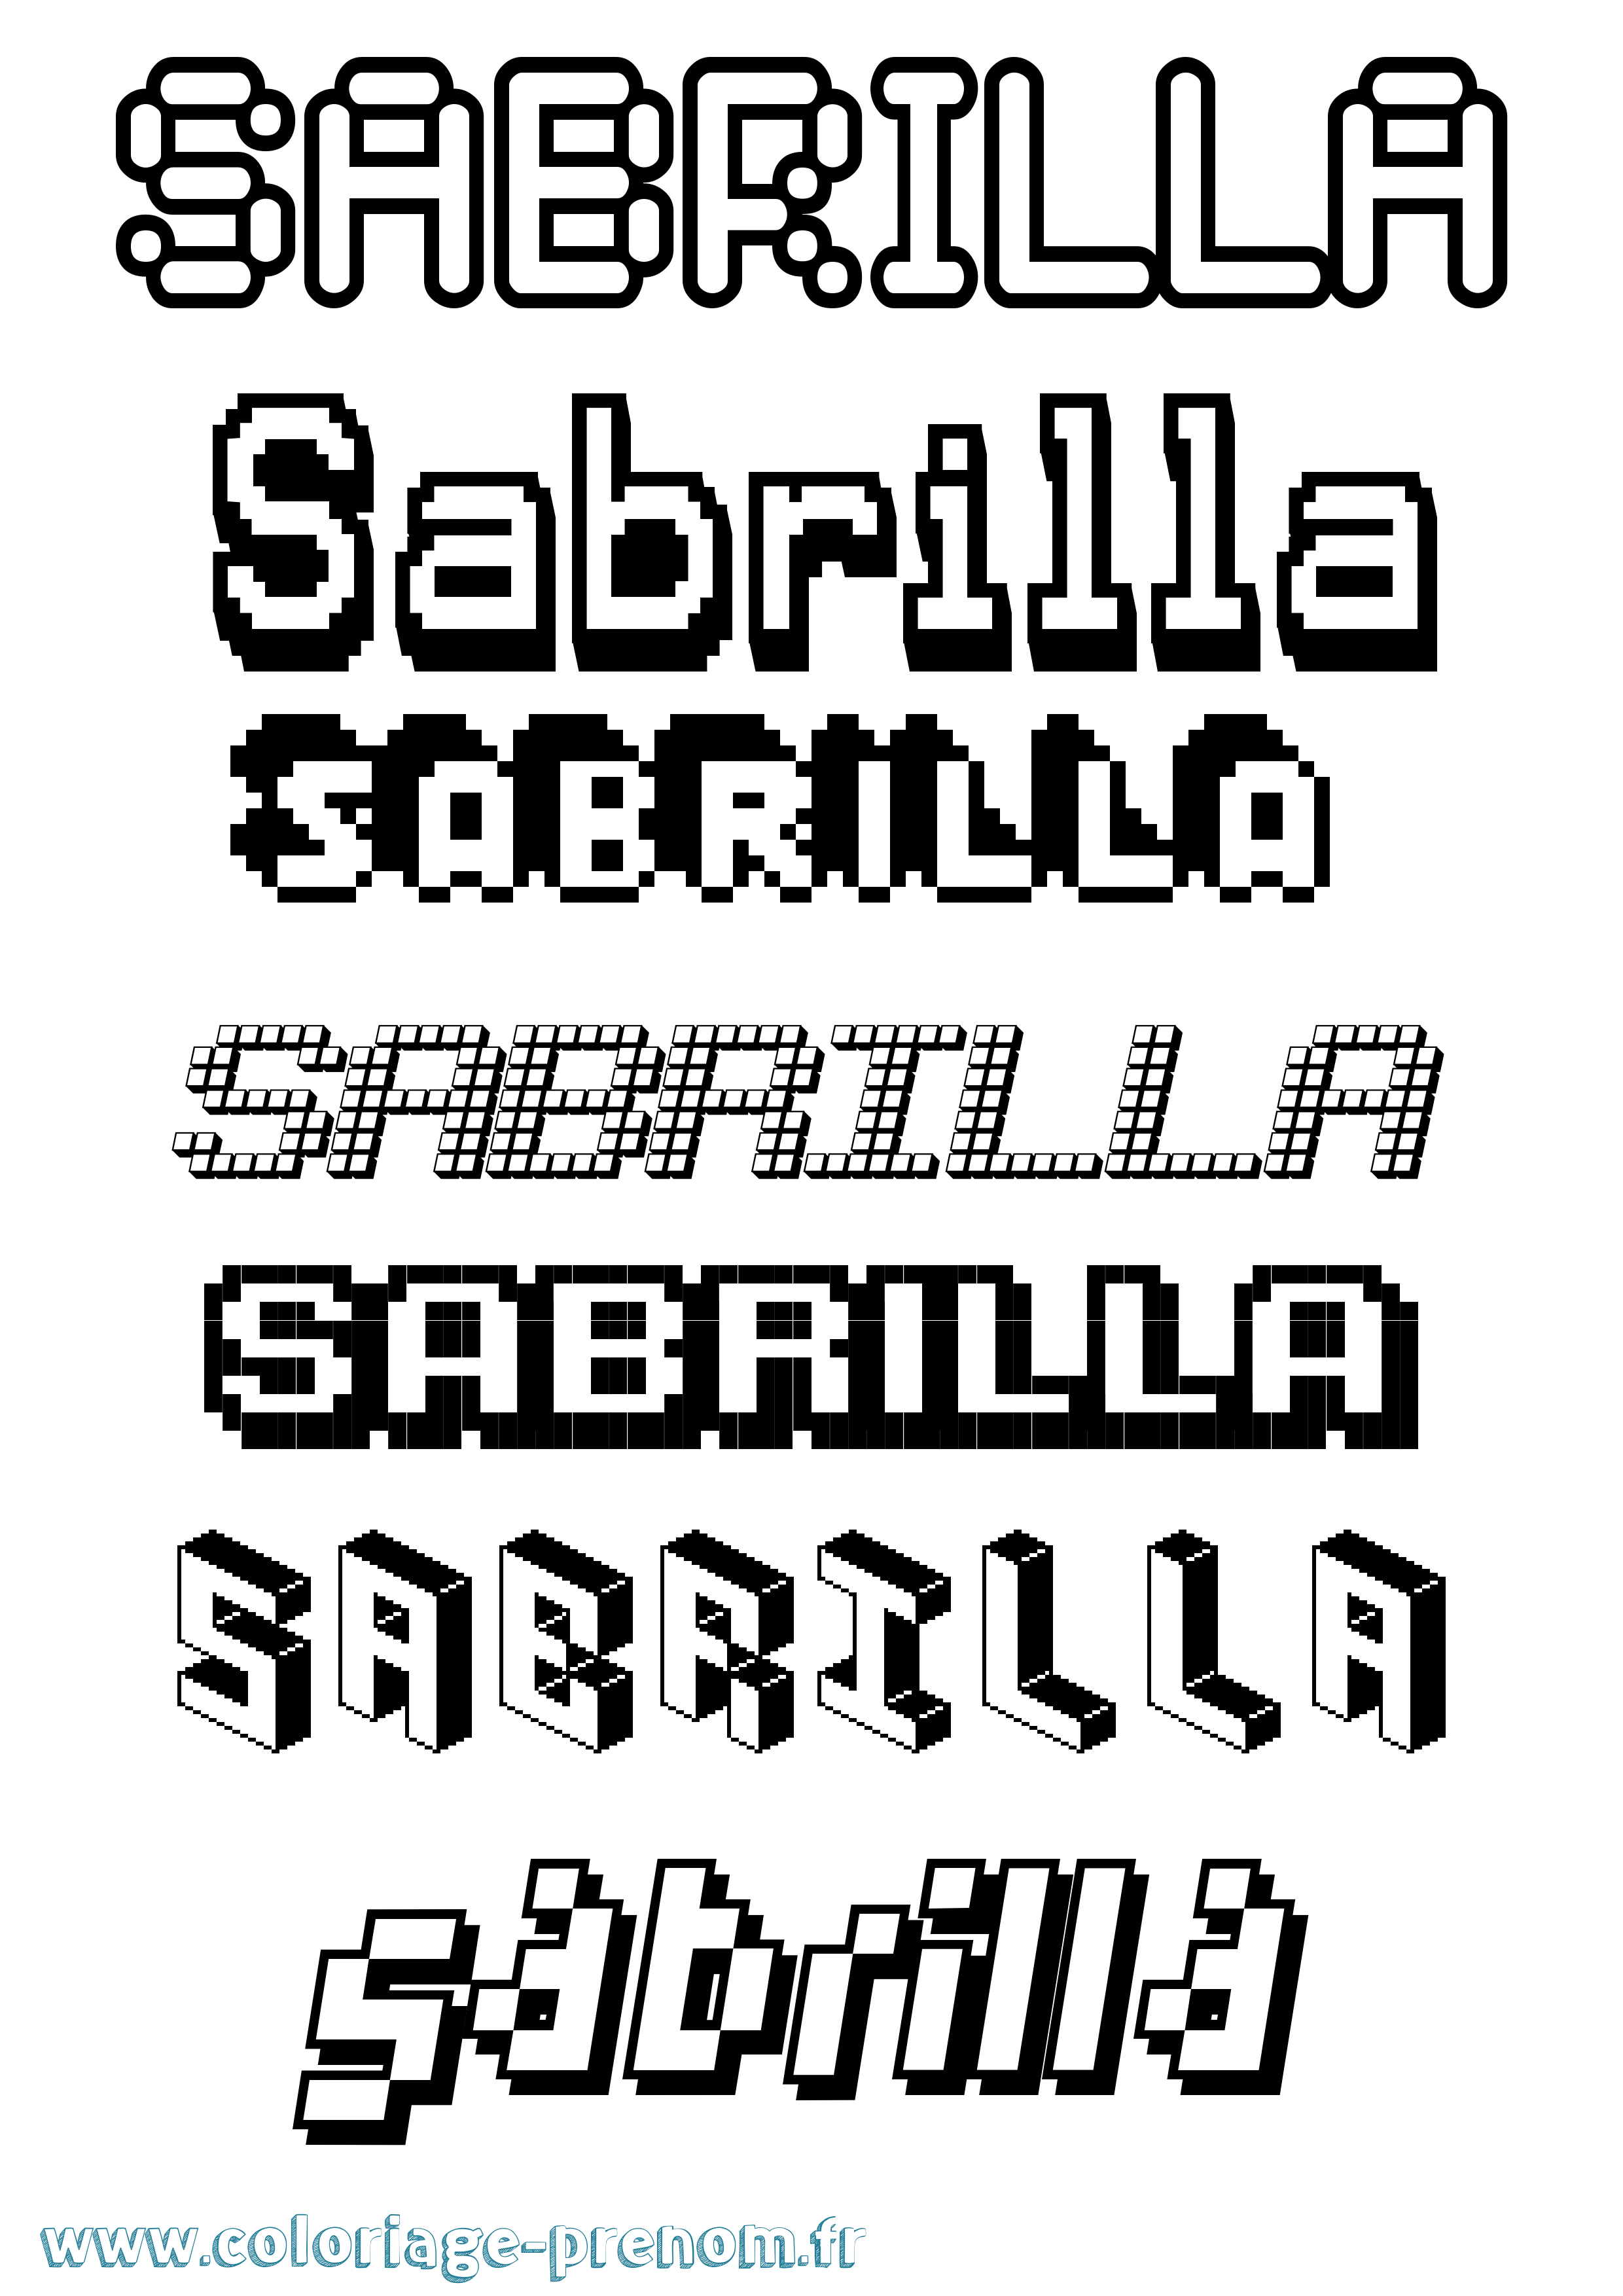 Coloriage prénom Sabrilla Pixel